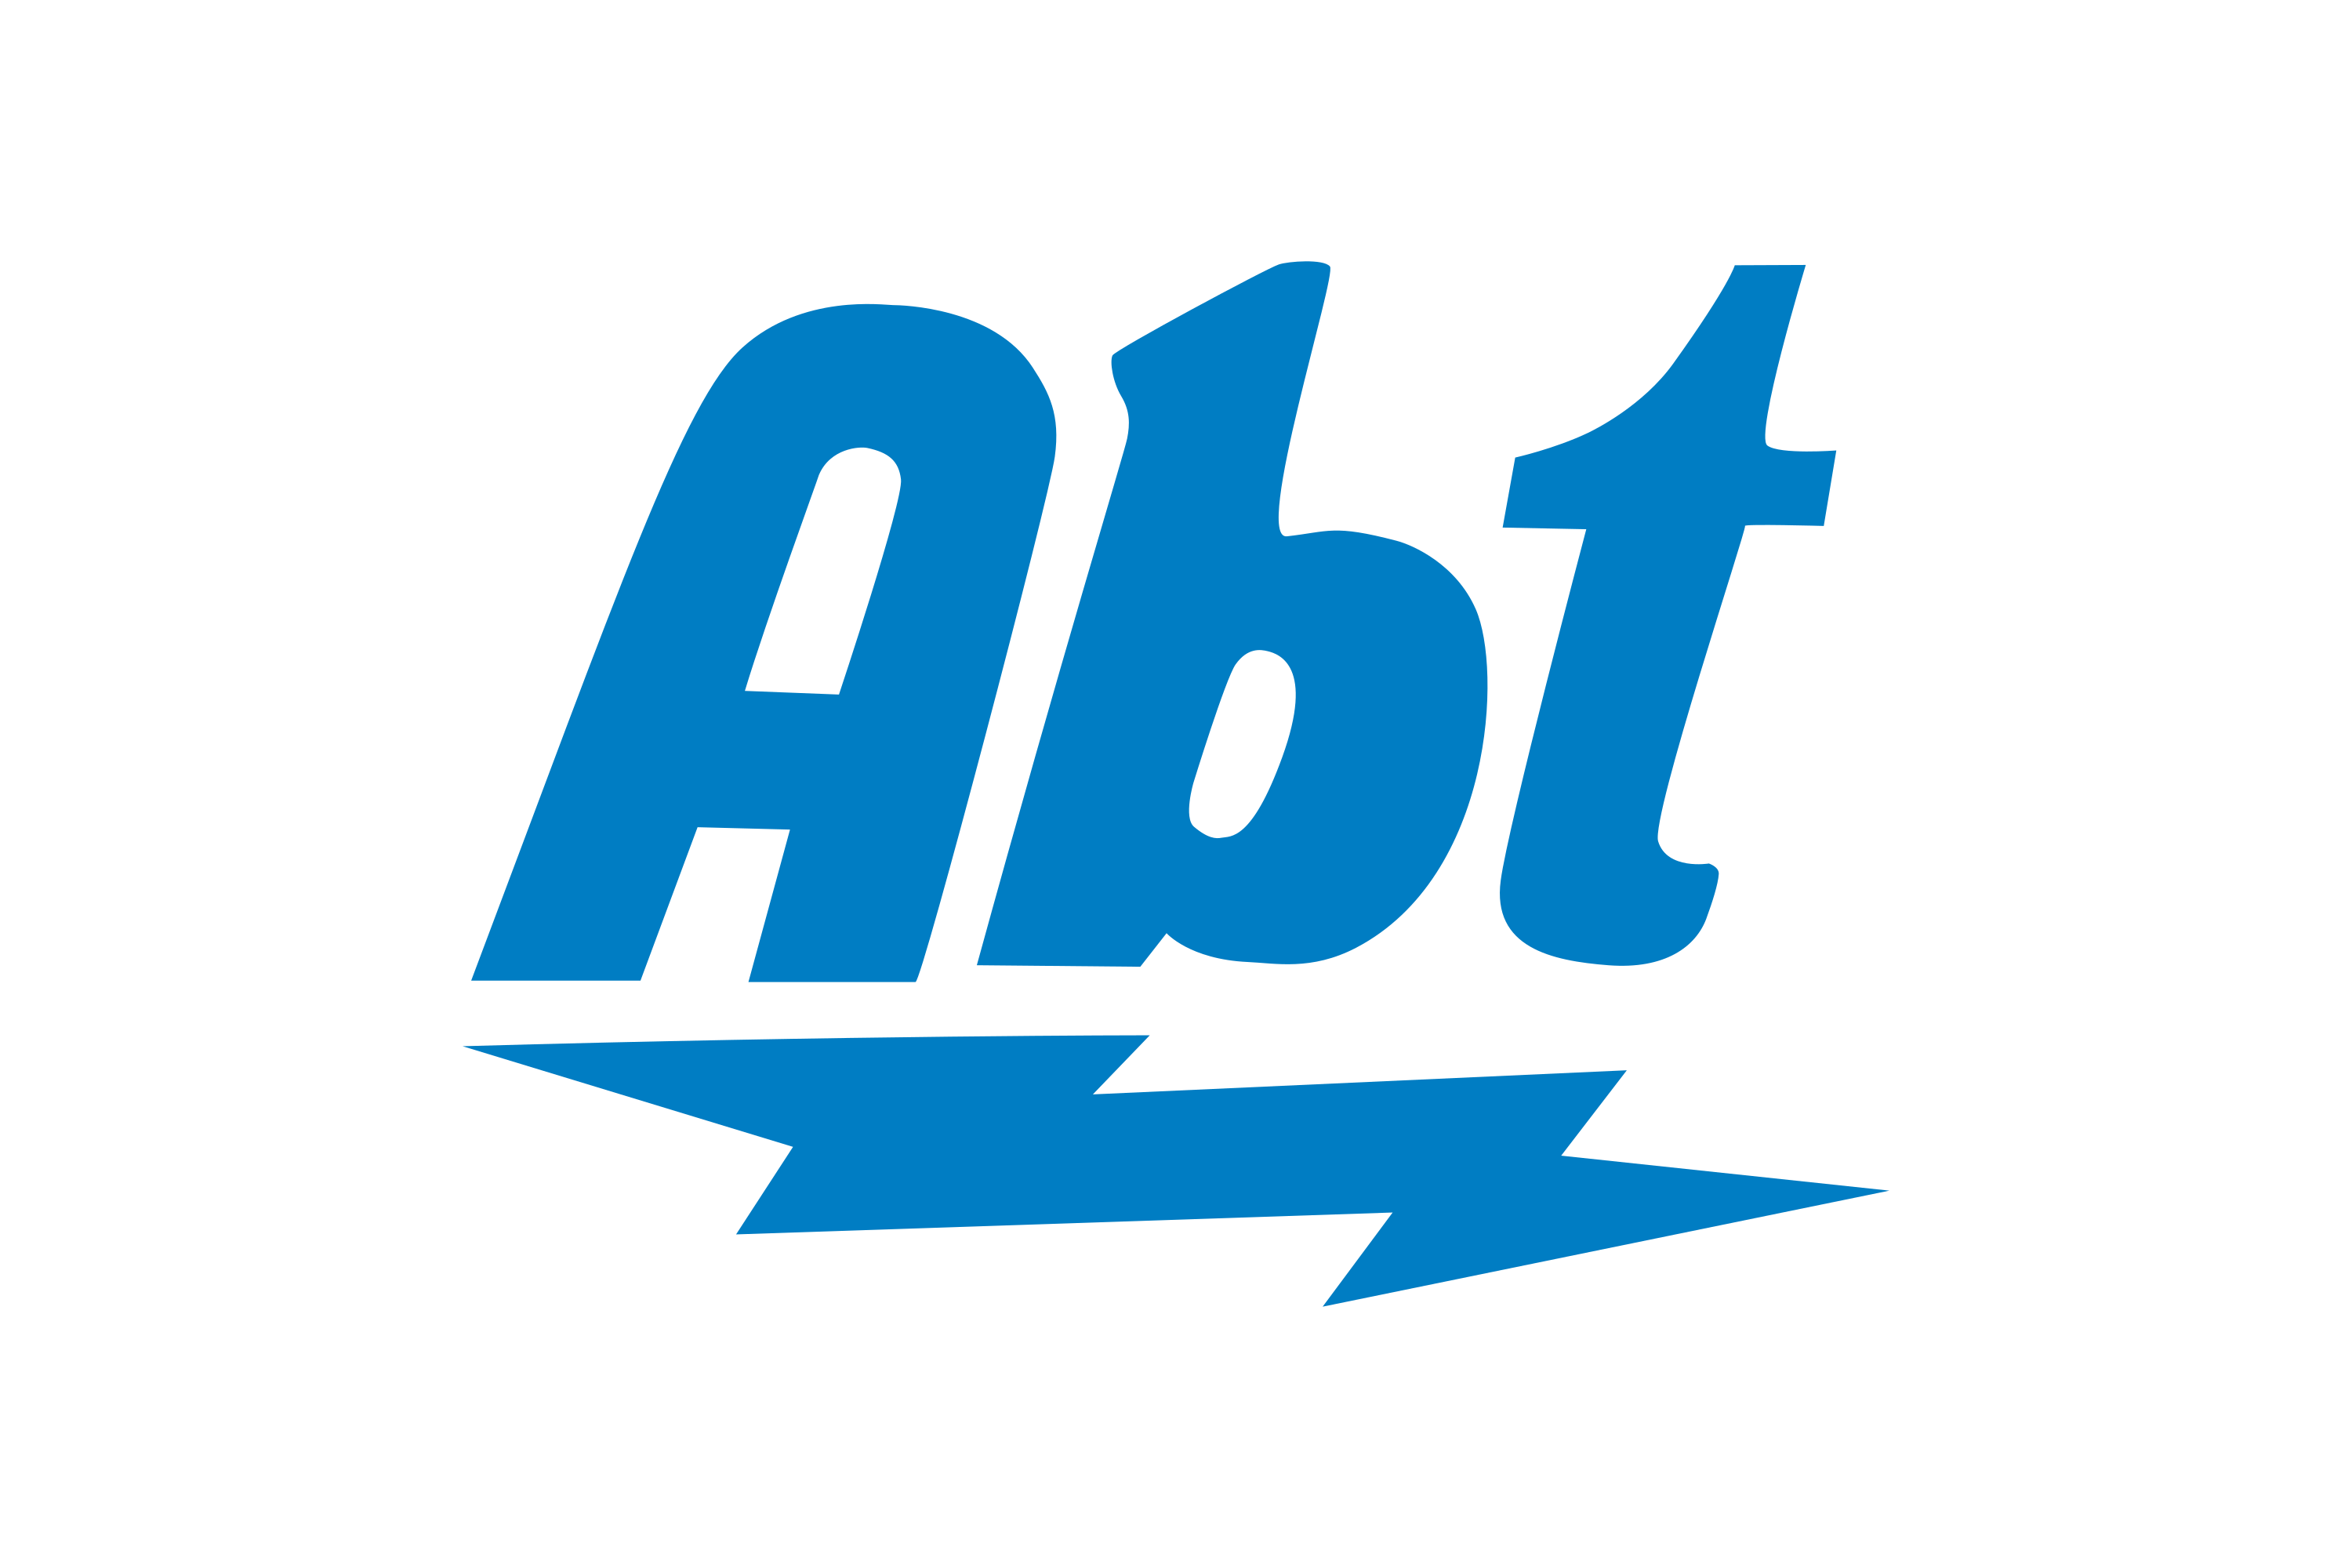 Abt Electronics Logo